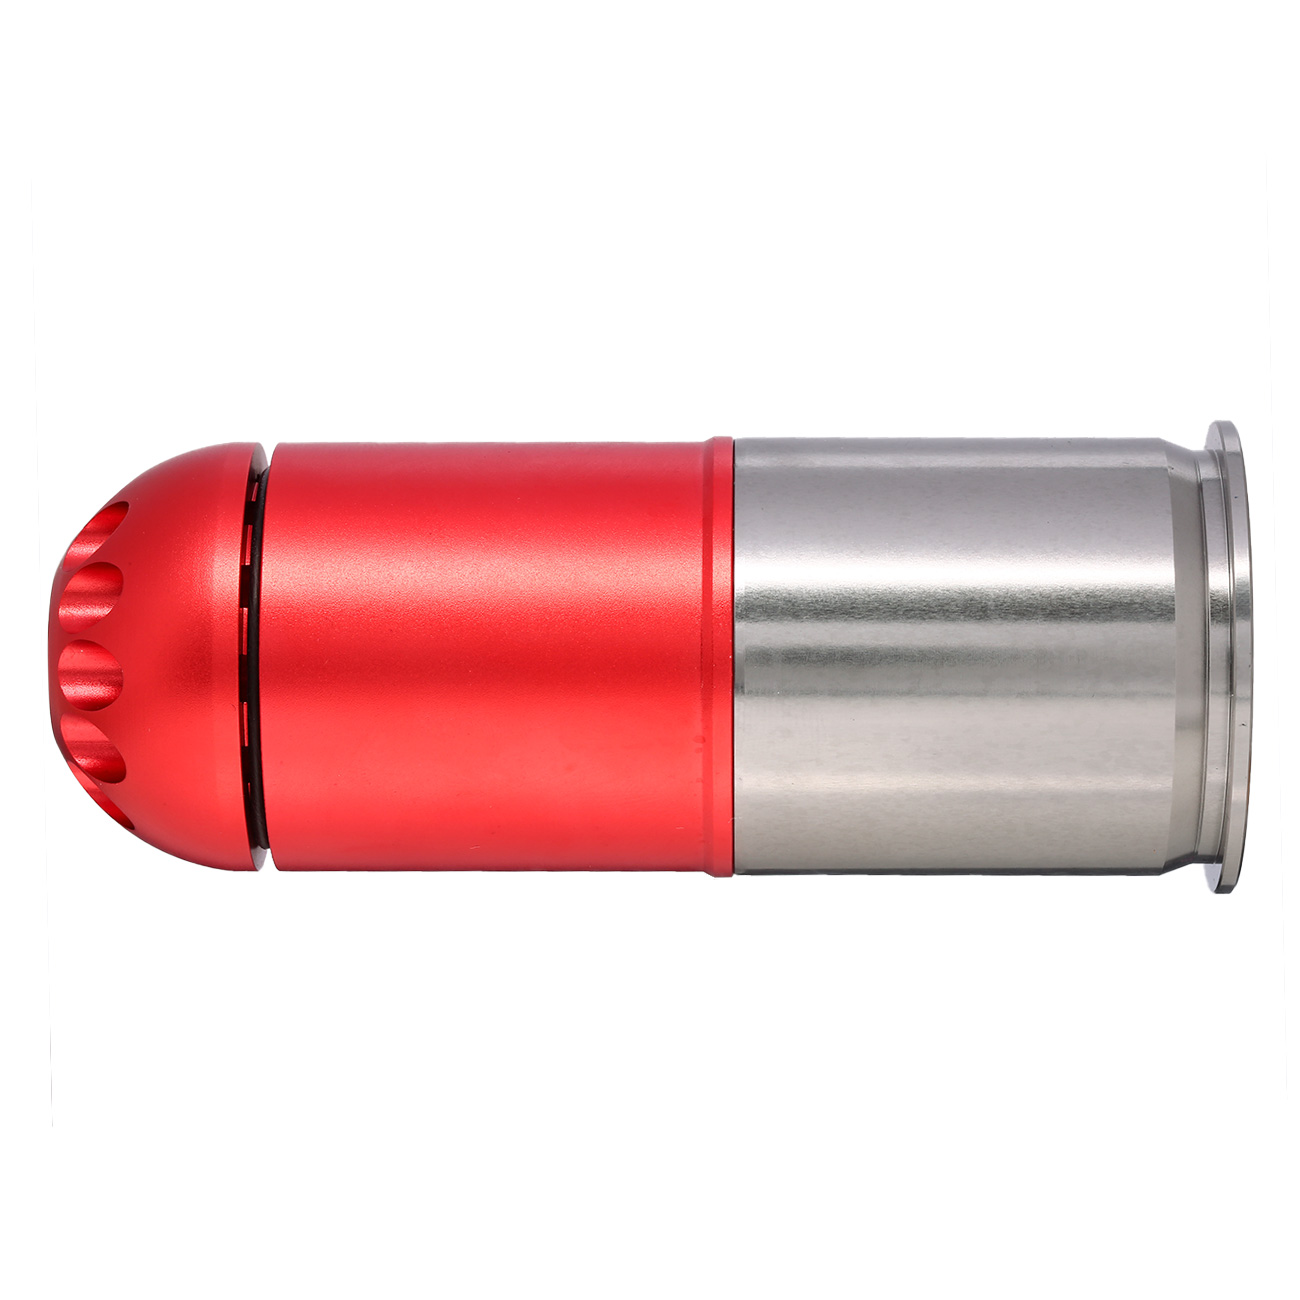 Nuprol 40mm Vollmetall Hülse / Einlegepatrone f. 120 6mm BBs rot Bild 1